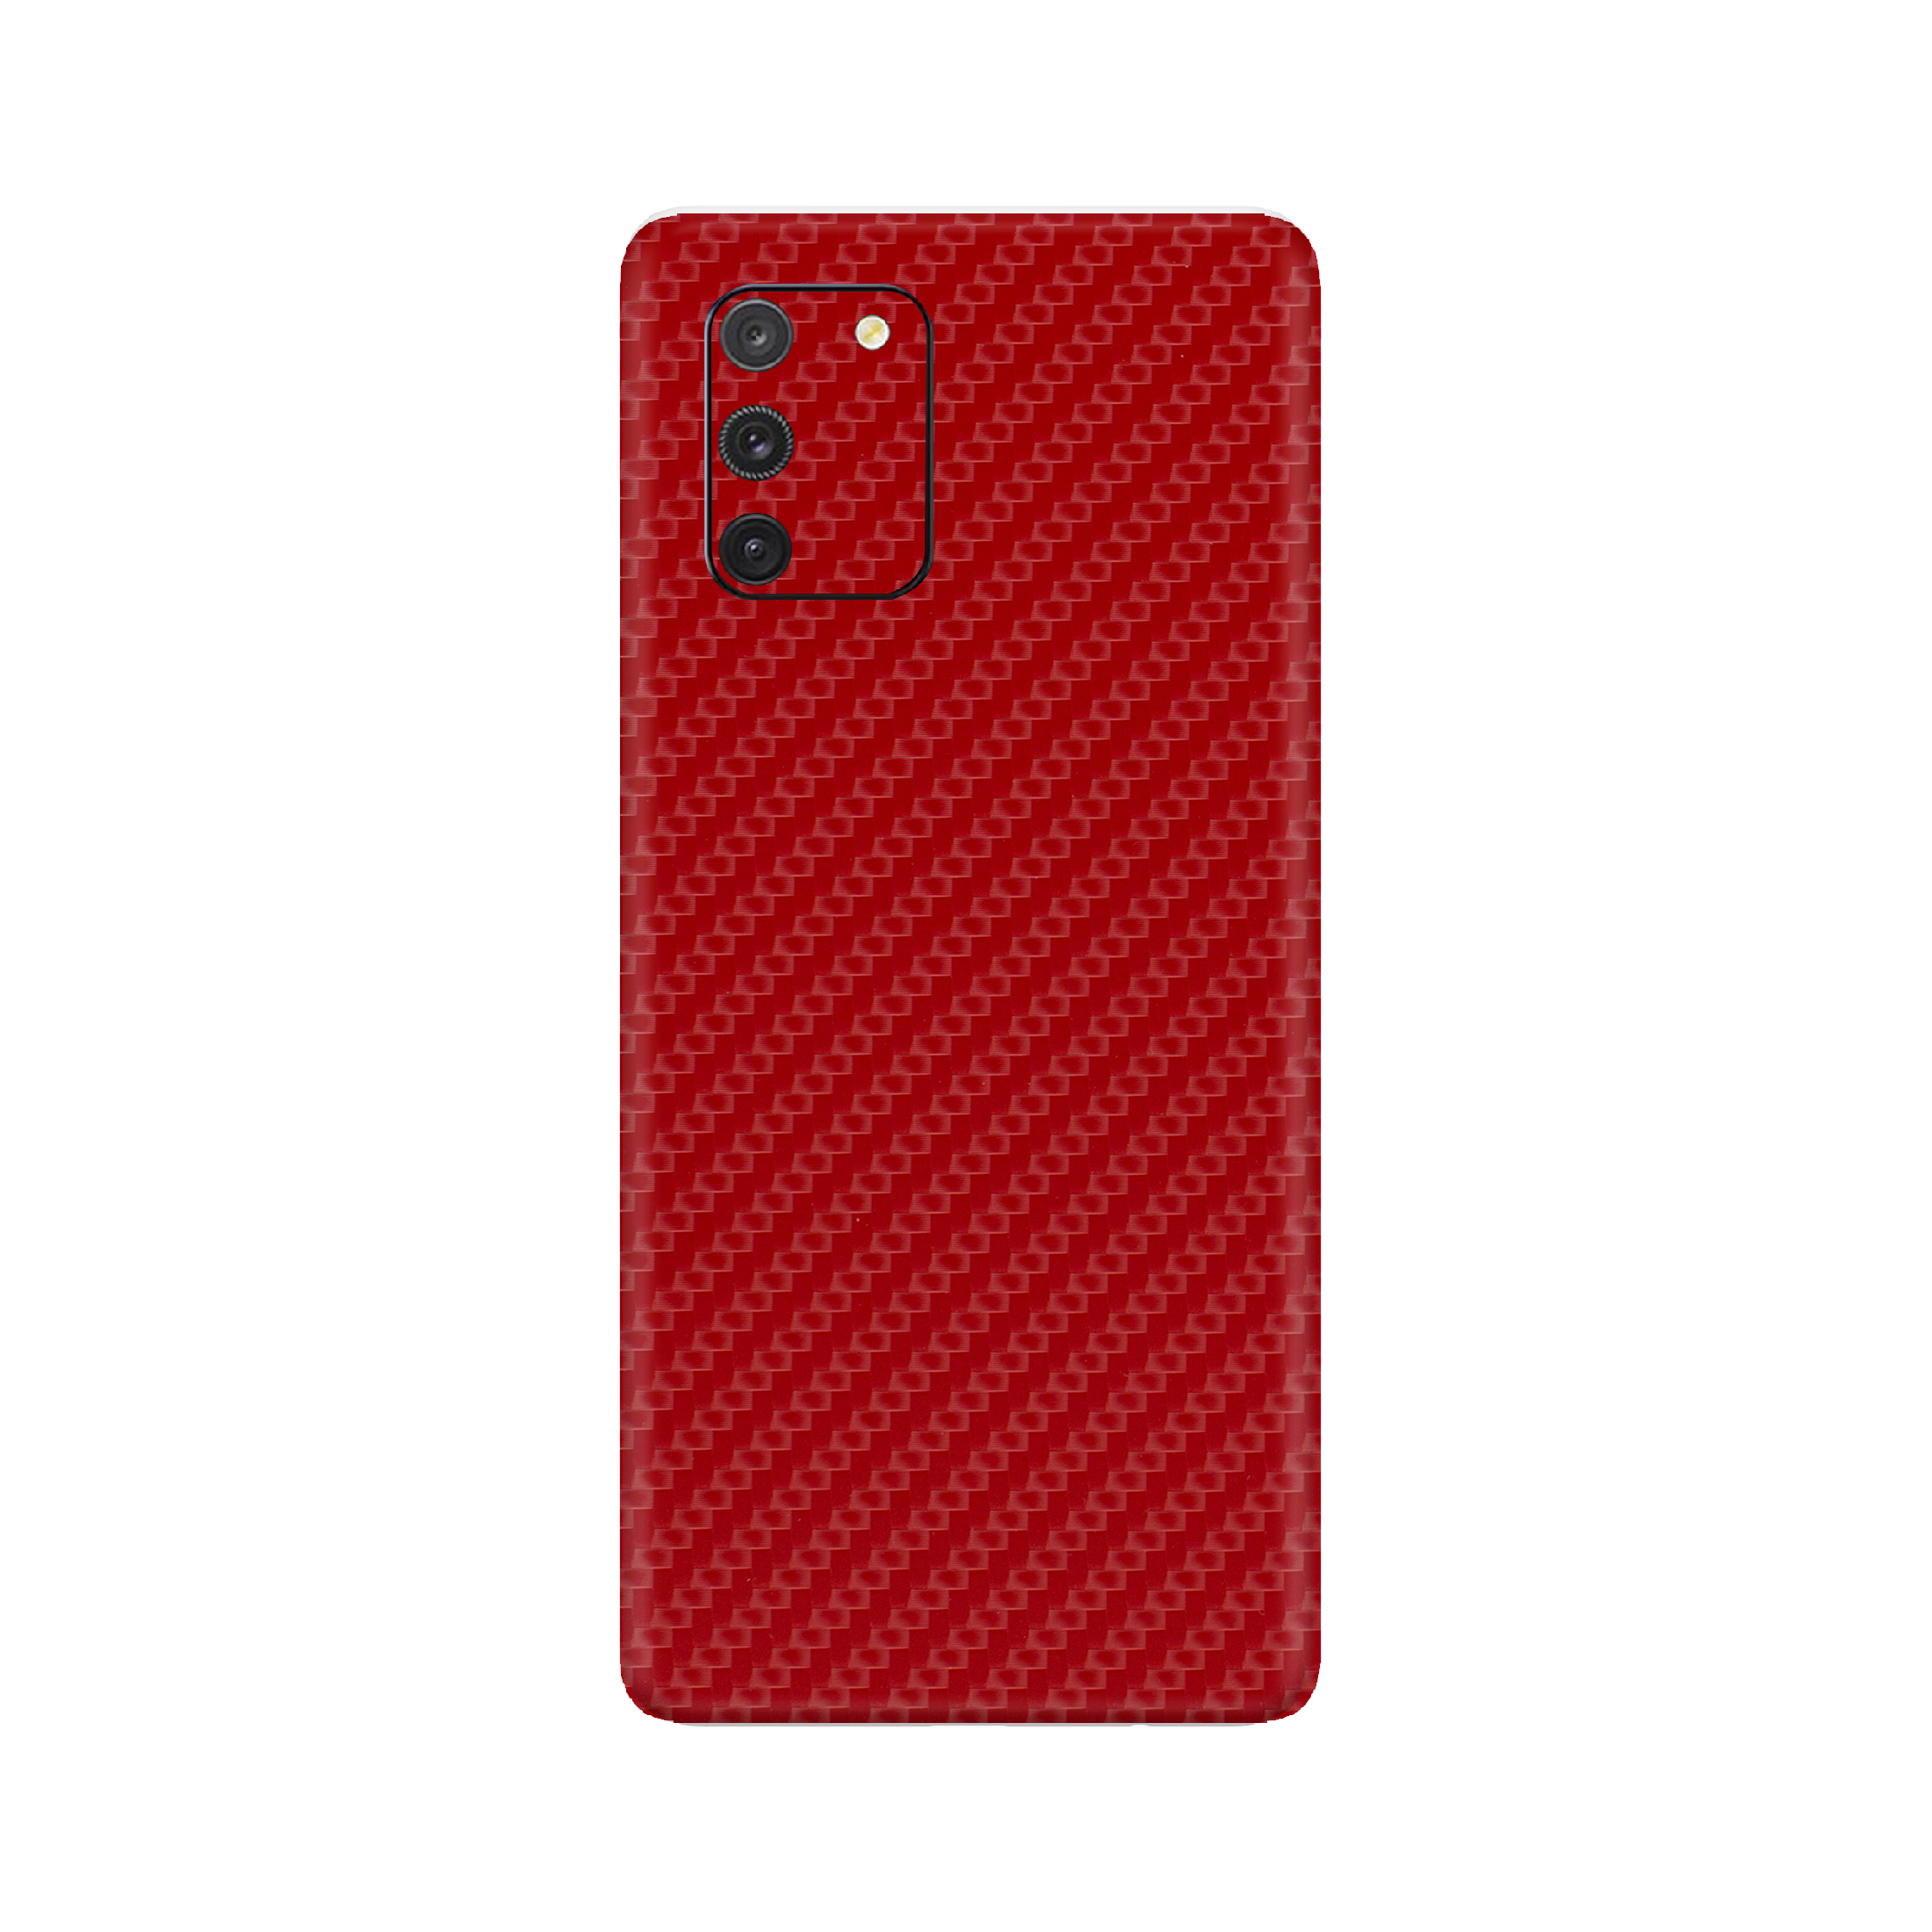 Carbon Fiber Red Skin for Samsung S10 Lite